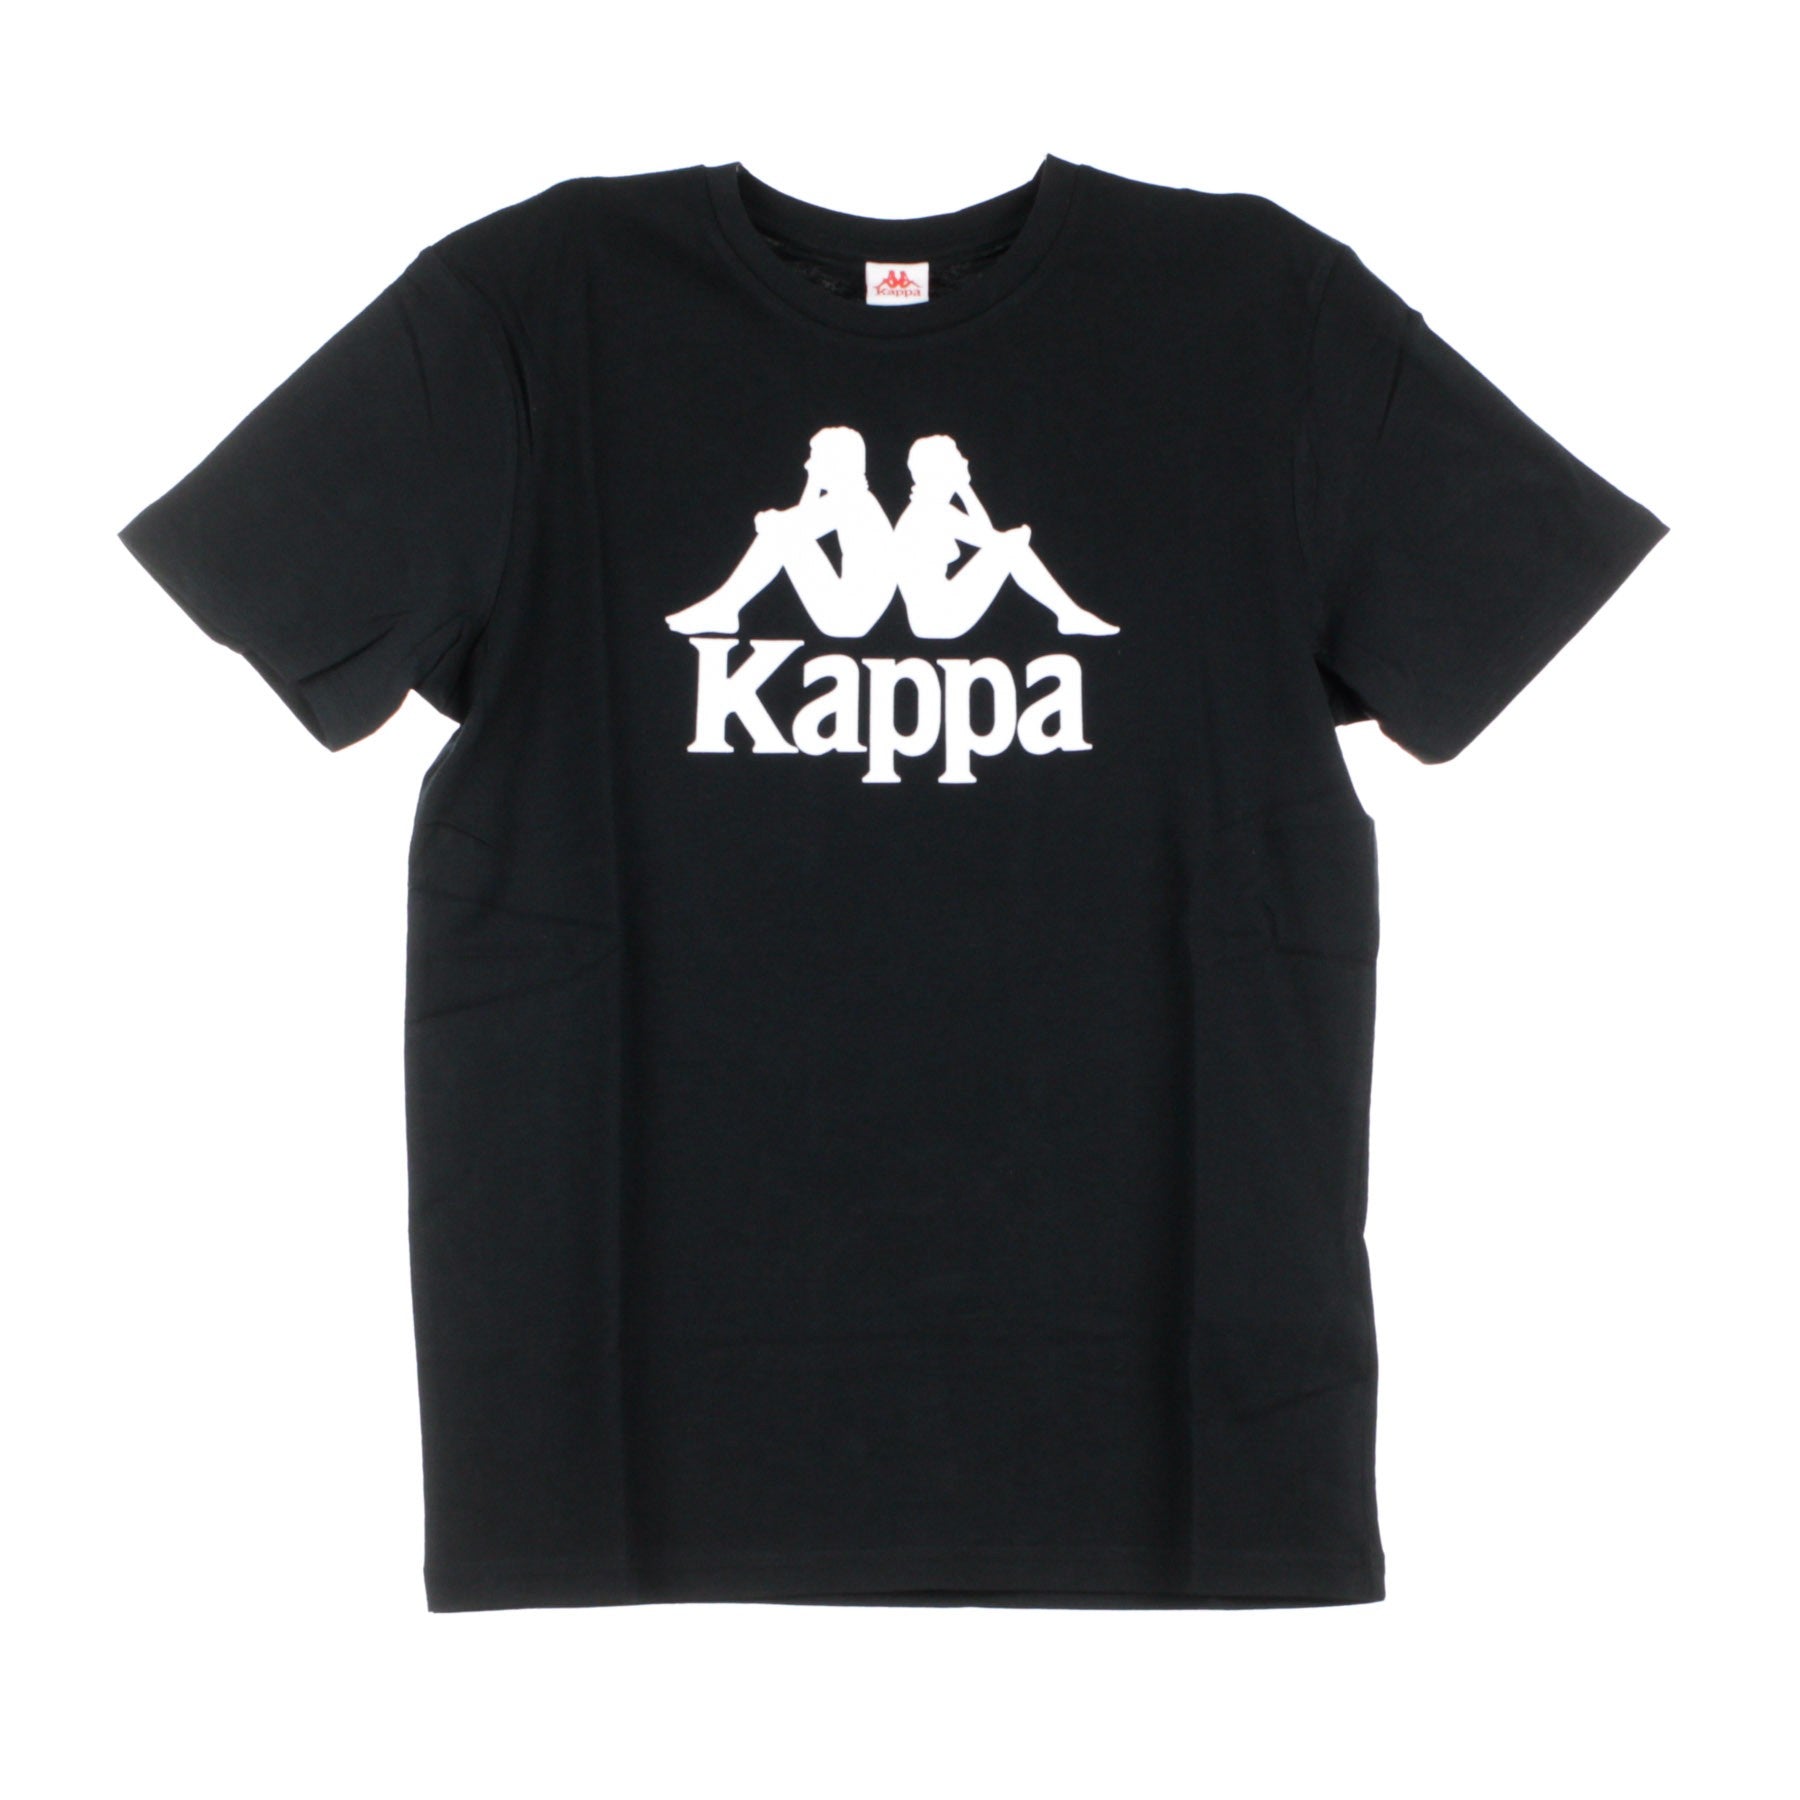 Kappa, Maglietta Uomo Authentic Estessi Slim, Black/white